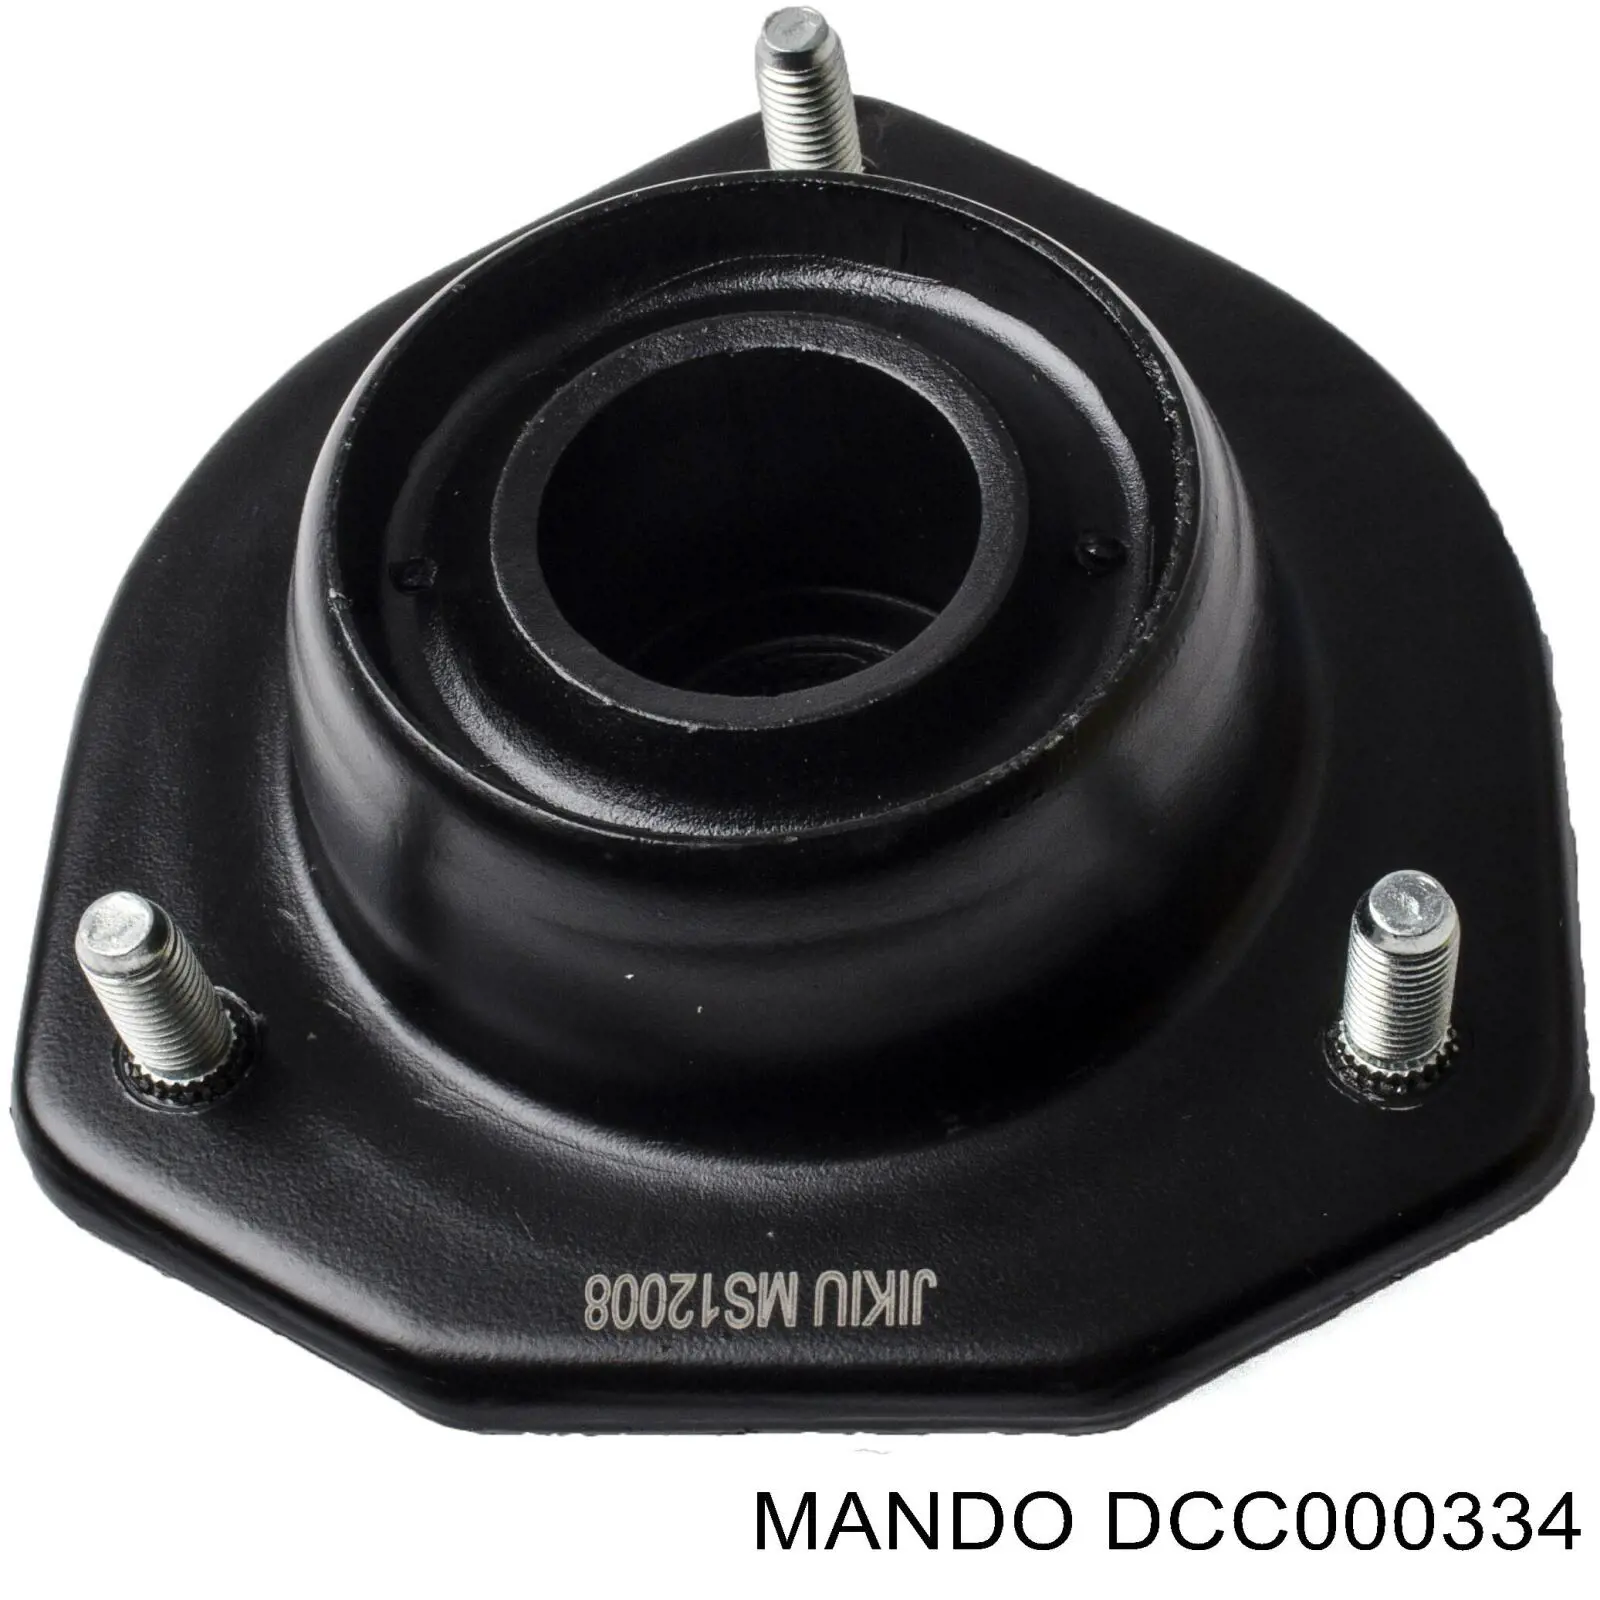 DCC000334 Mando soporte amortiguador delantero